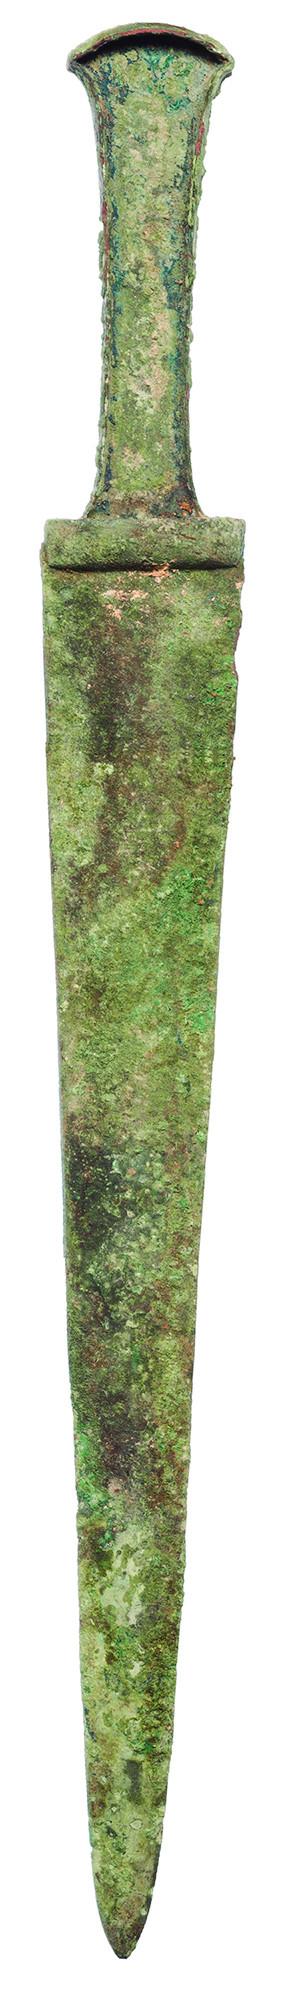 2006   -  PRÓXIMO ORIENTE. IRÁN. Edad del Hierro. Espada (estilo cultura Hasanlu IV) (1250-800 a.C.). Bronce. Longitud 39,5 cm.